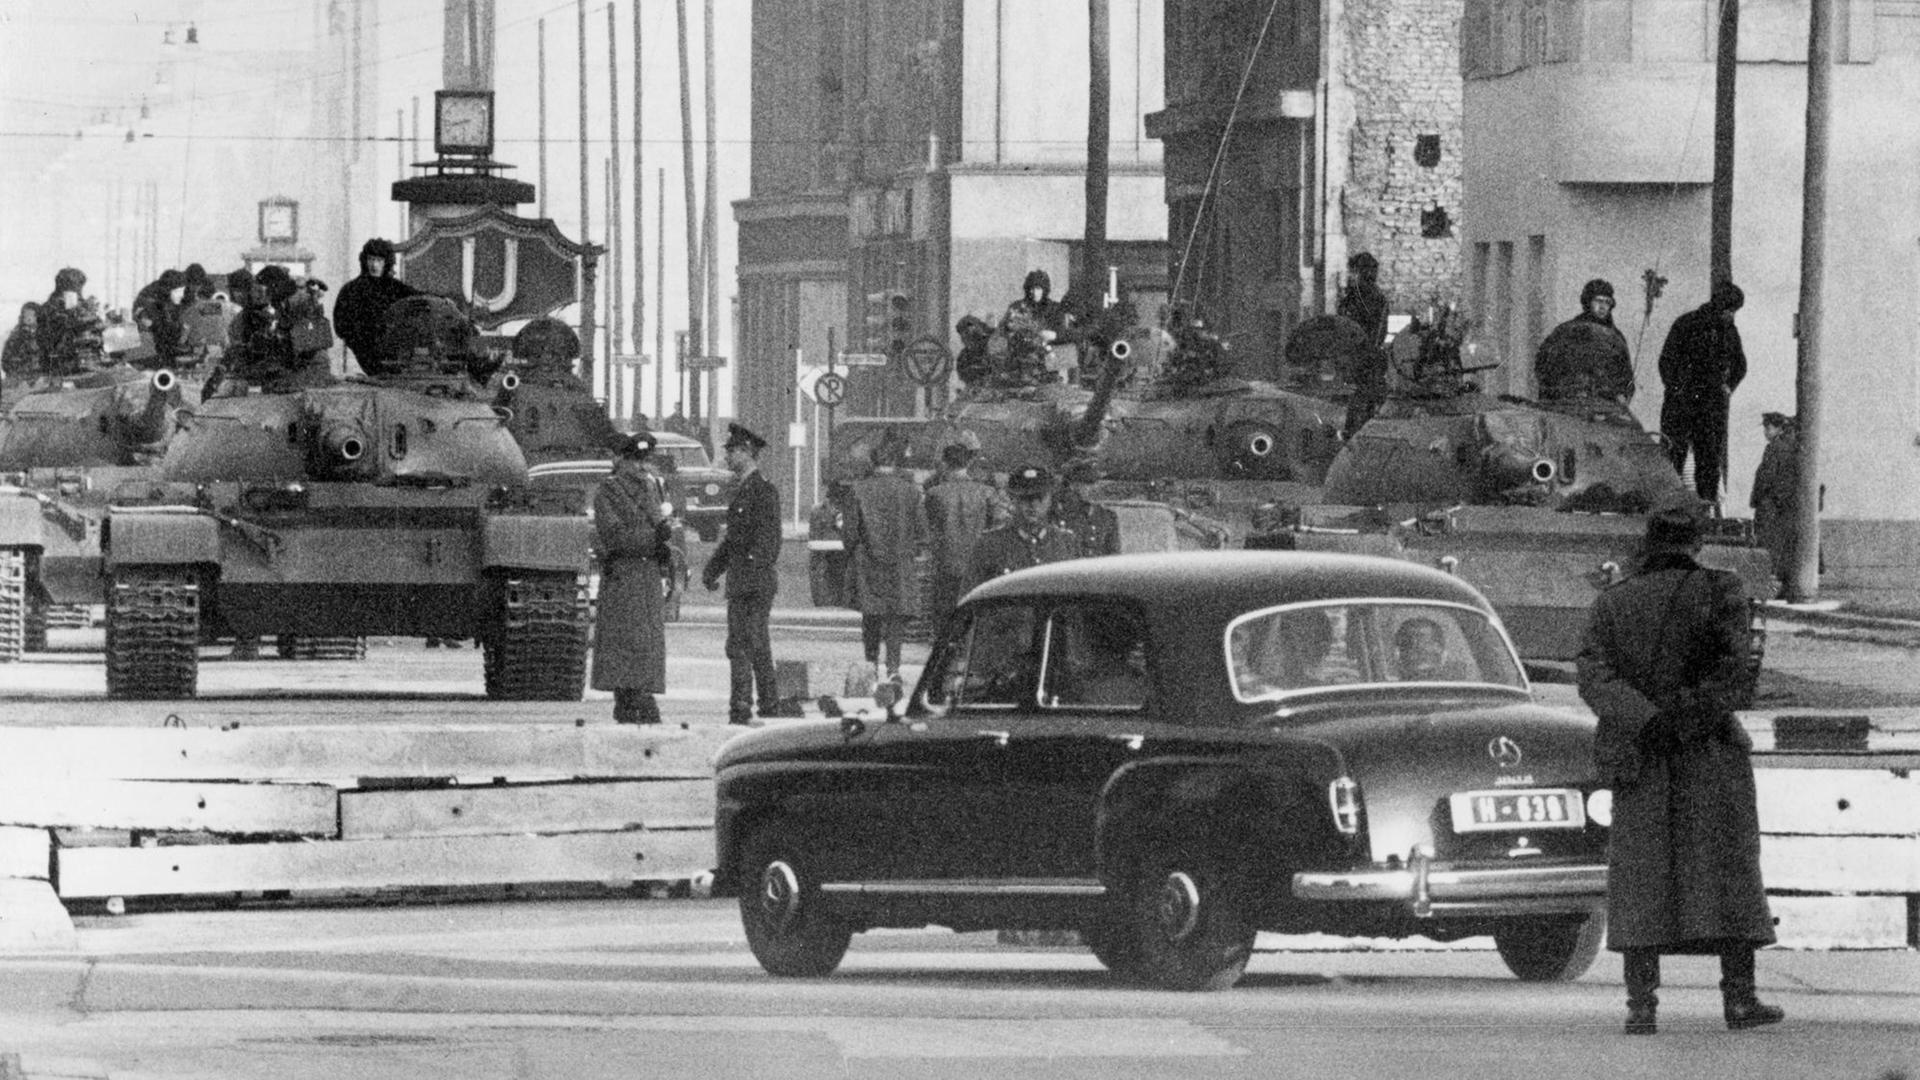 Gespannte Situation wenige Wochen nach dem Mauerbau: Sowjetische Panzer vom TypT54 stehen am 28.10.1961 am Sektorengrenzübergang für Diplomaten und Ausländer in der Friedrichstraße, etwa 150 Meter hinter der Grenzlinie in Ostberlin. Vorn ein Diplomatenwagen kurz vor der Slalomsperre.